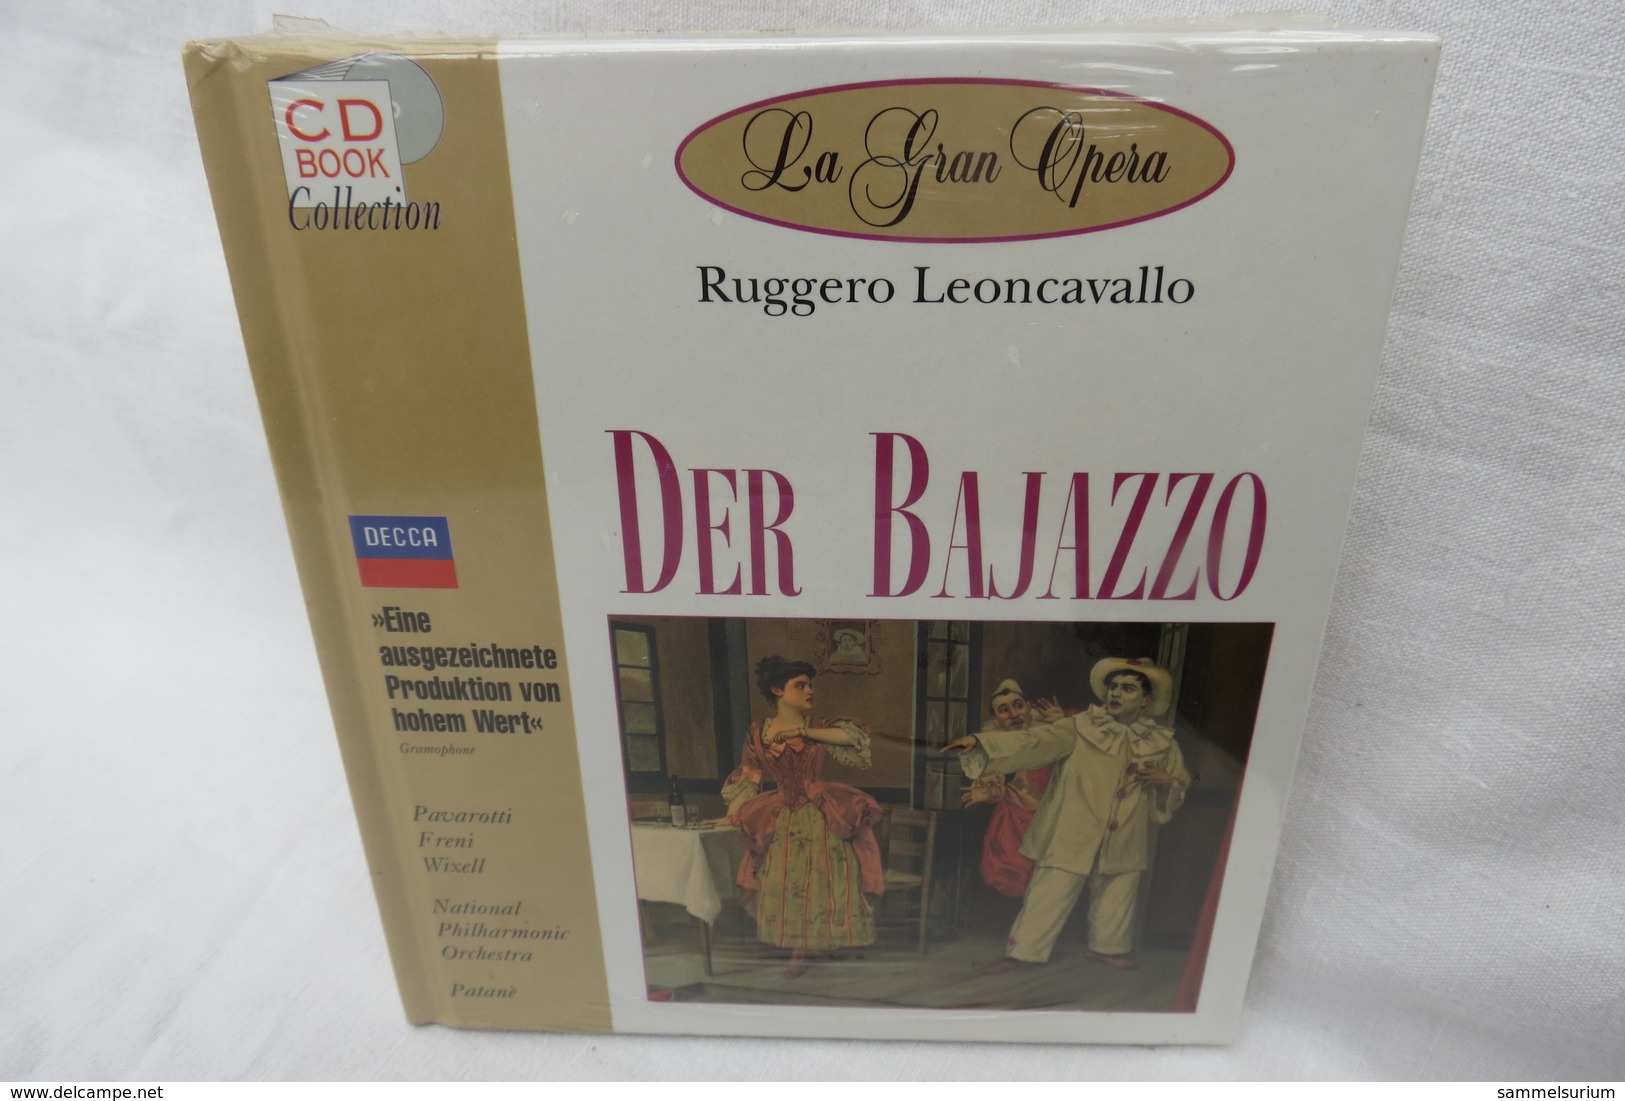 CD "Der Bajazzo / Ruggero Leoncavallo" Mit Buch Aus Der CD Book Collection (ungeöffnet, Original Eingeschweißt) - Opéra & Opérette